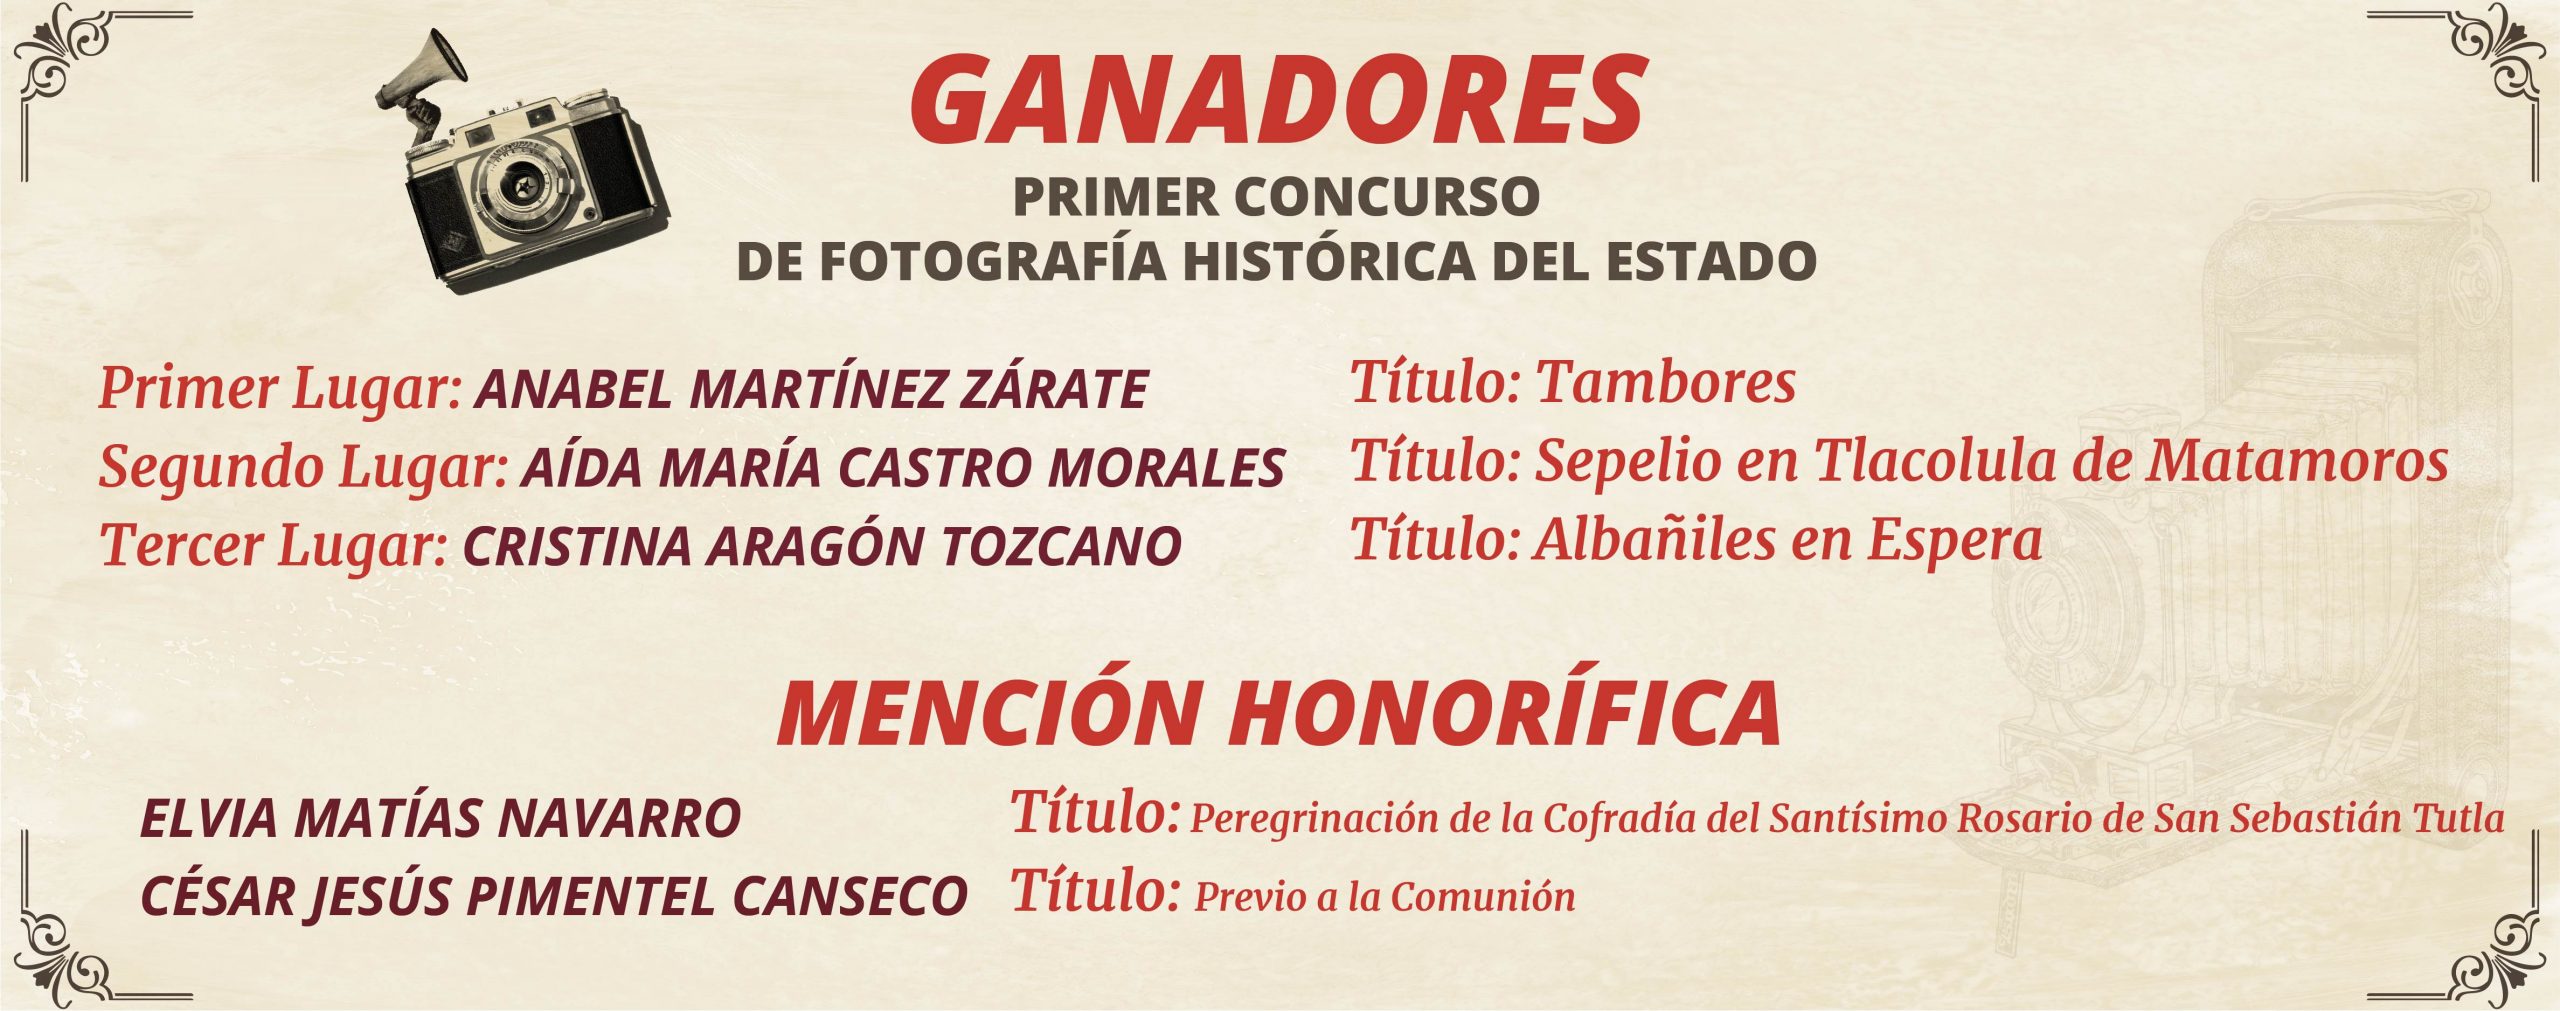 Ganadores Primer concurso fotográfico Histórica del Estado